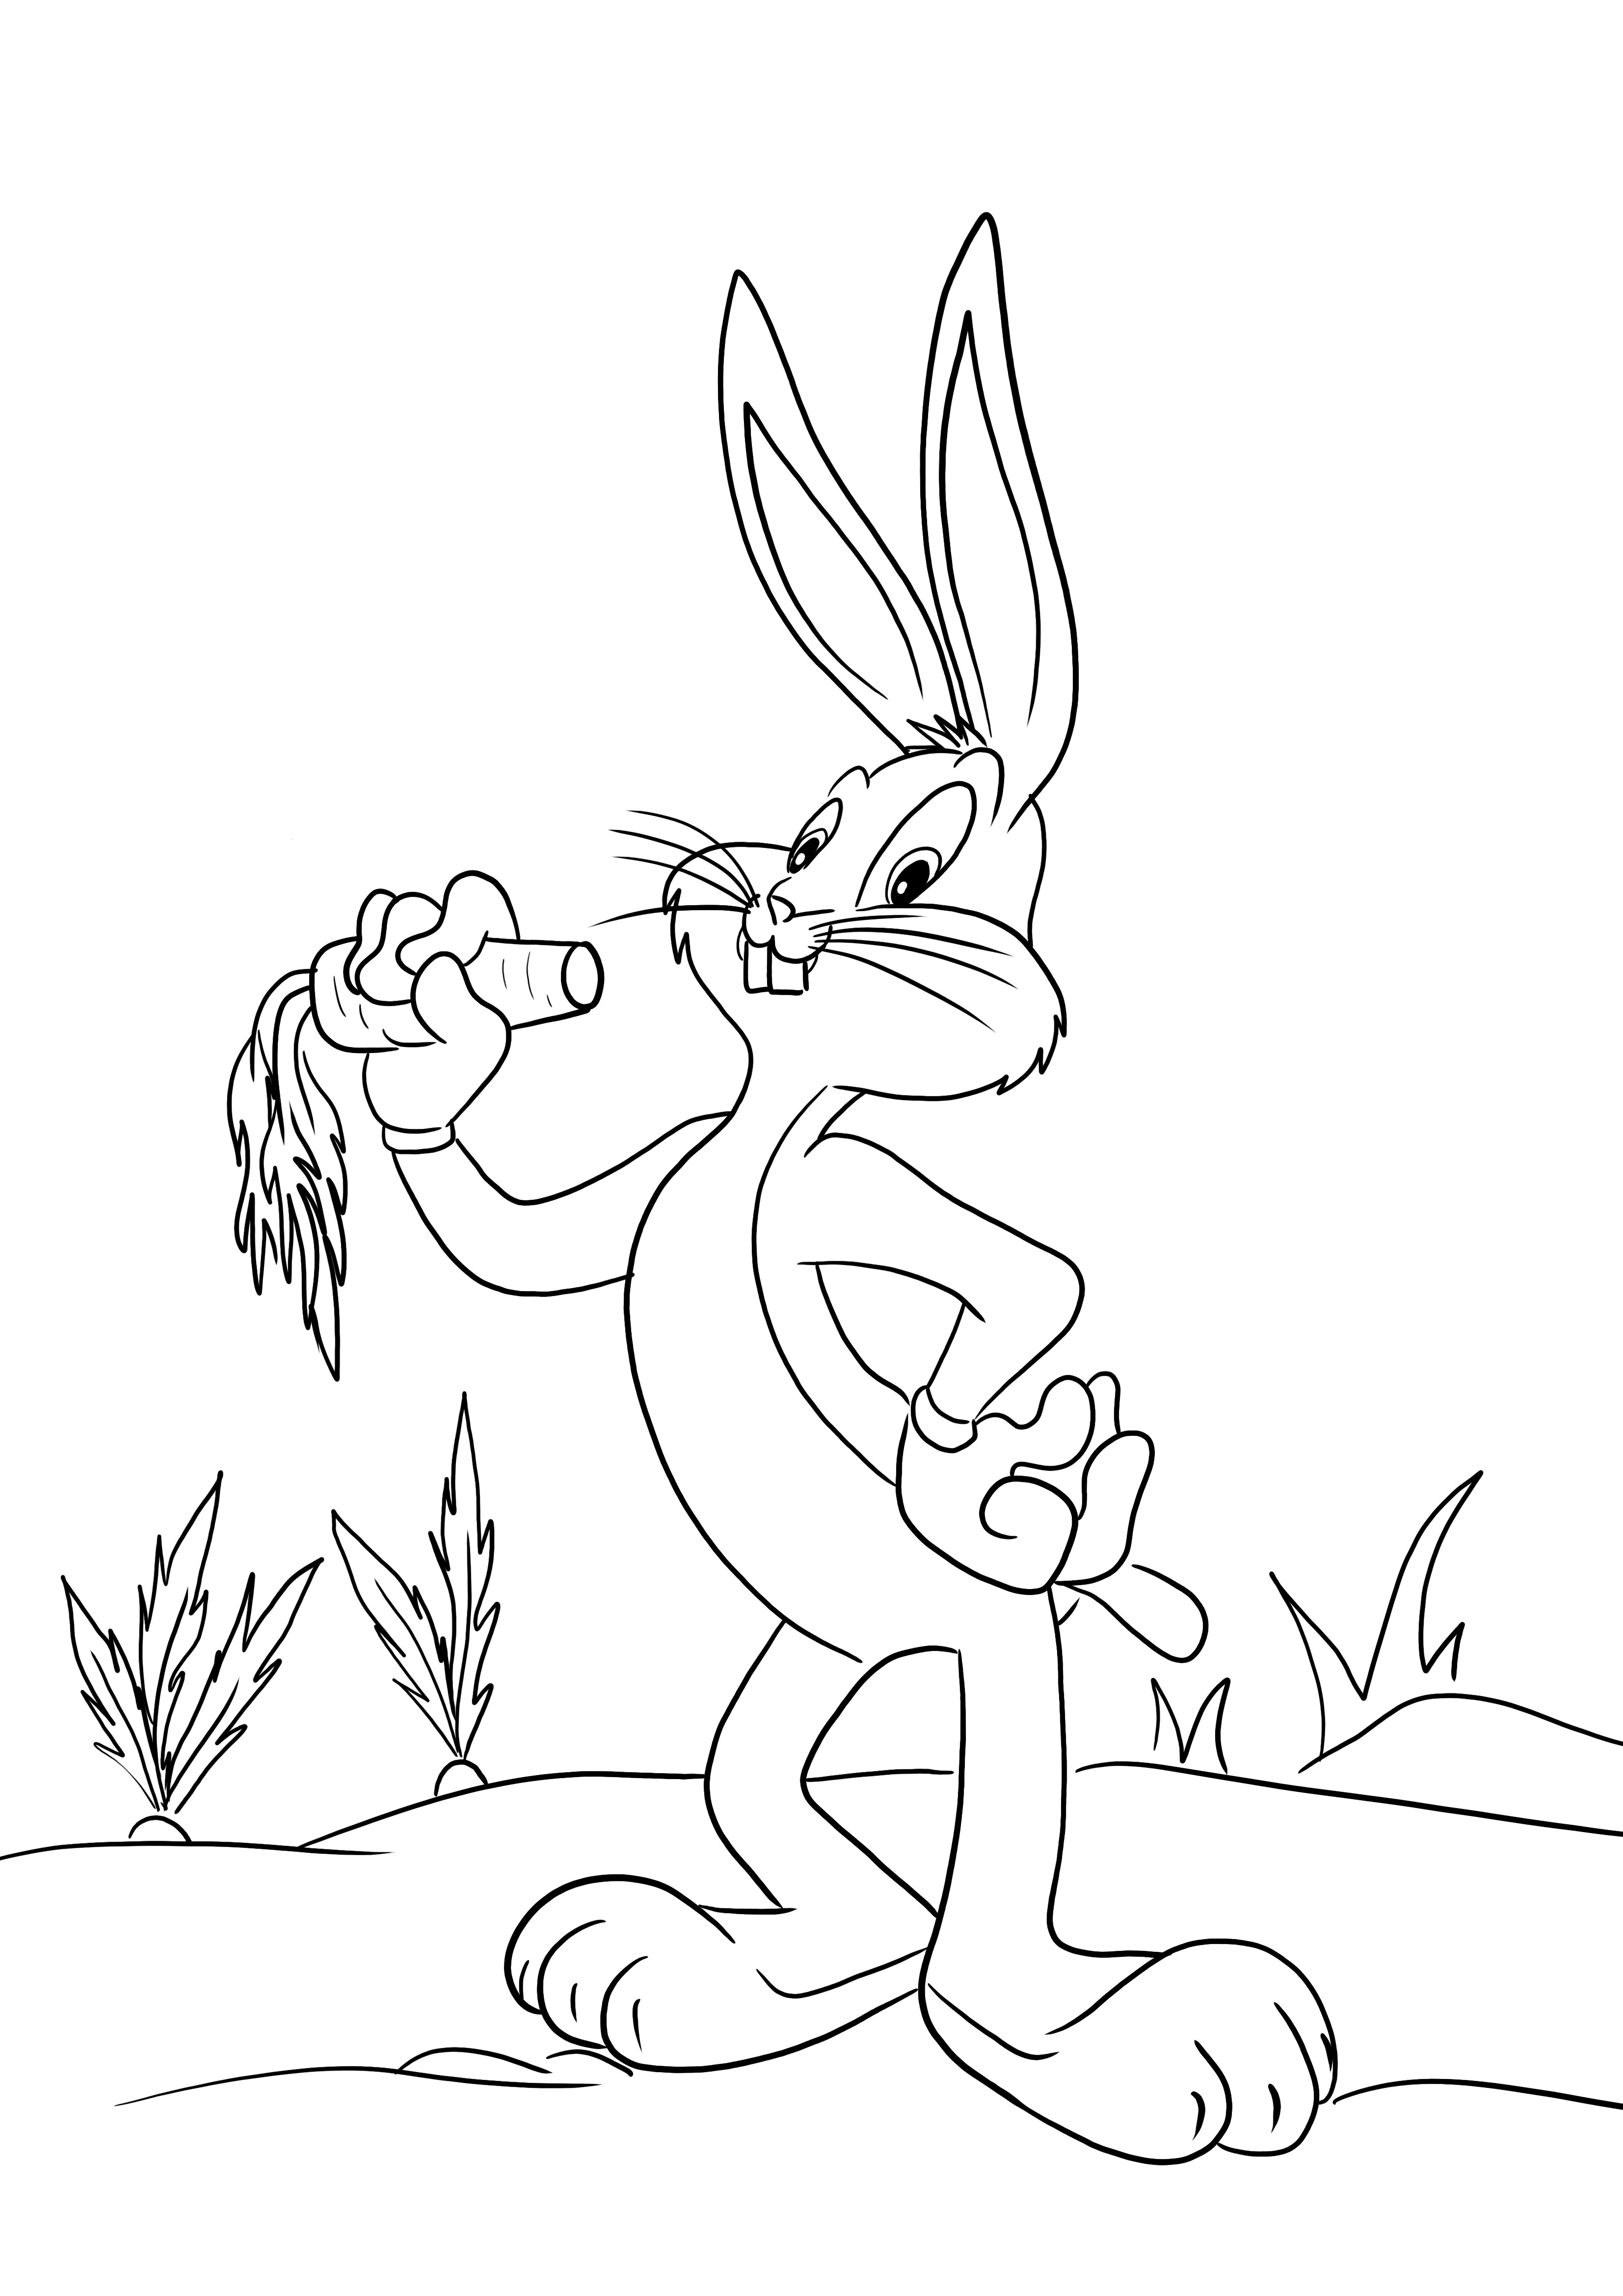 Imagine ușoară de colorat a lui Bugs Bunny pentru ca copiii să coloreze și să se distreze